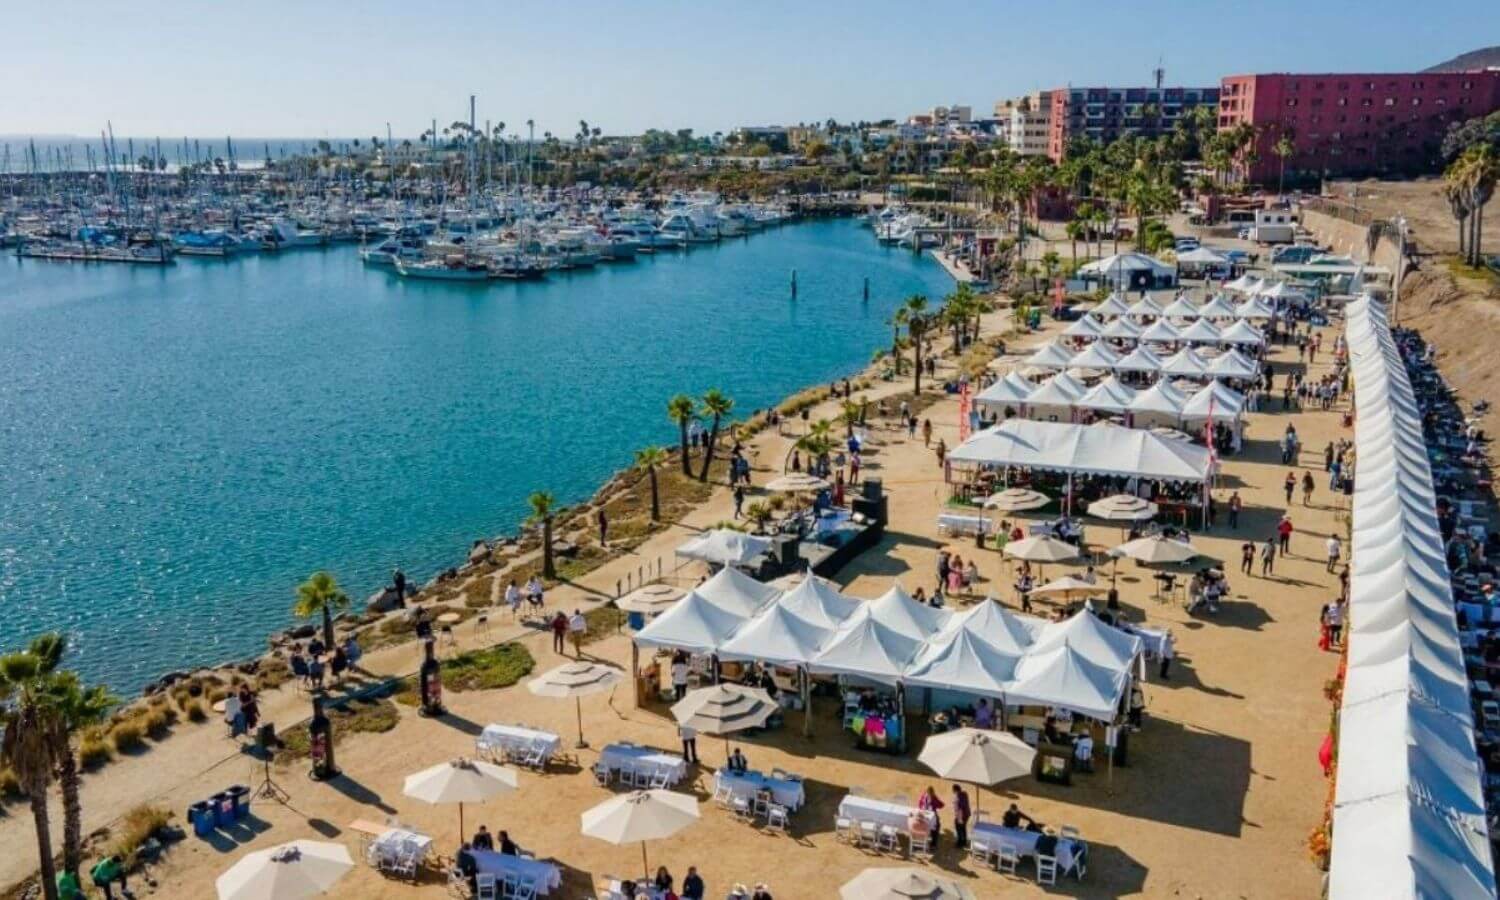 Areal view of the stalls set up by the ocean at the Festival de las Conchas y el Vino Nuevo in Ensenada